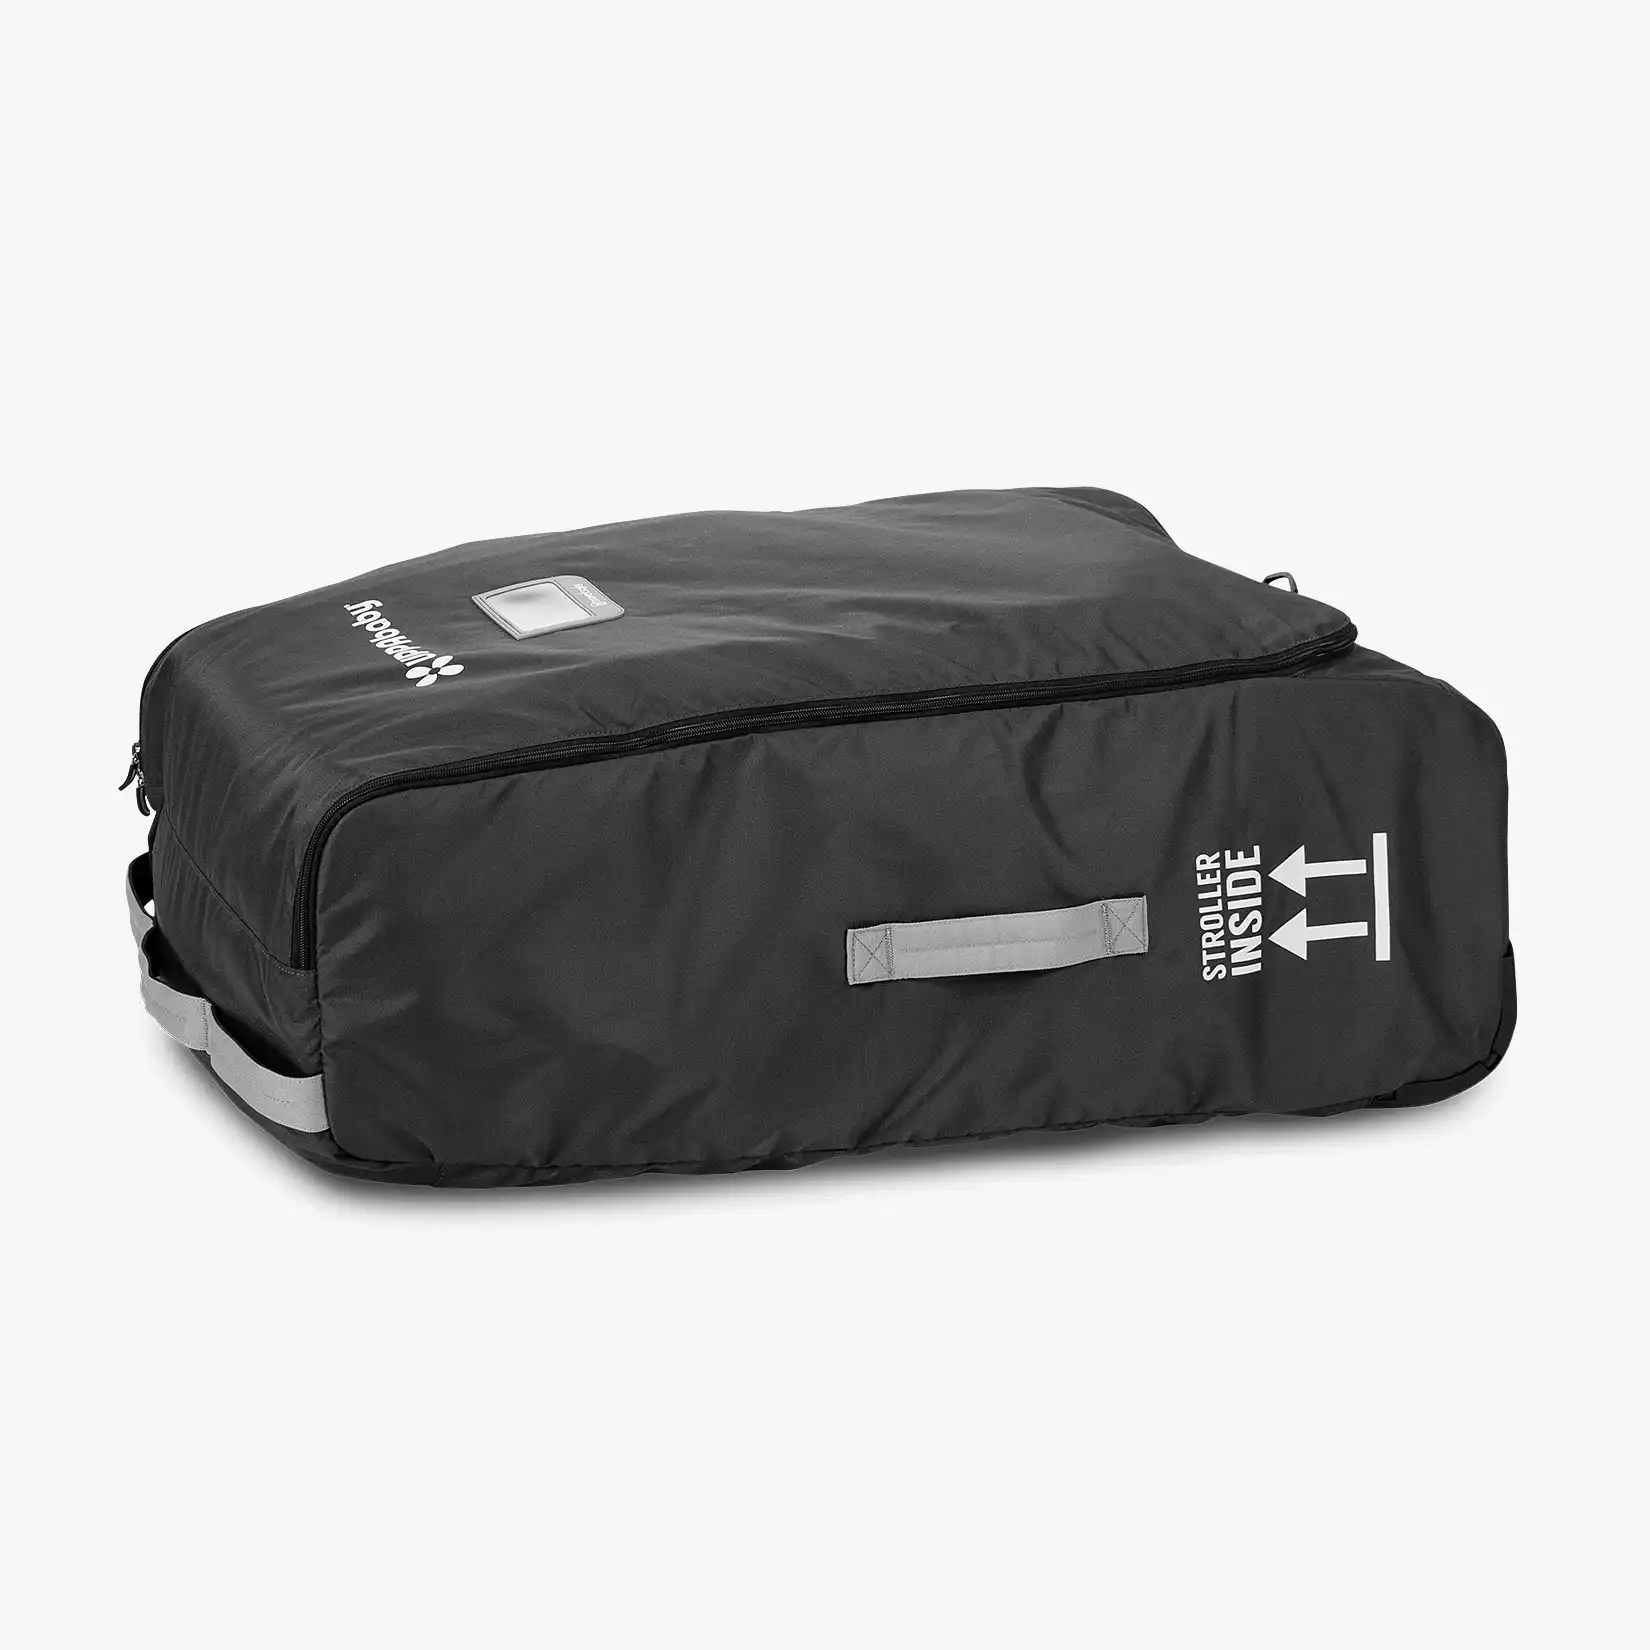 Travel Bag for Vista, Vista V2, Cruz and Cruz V2